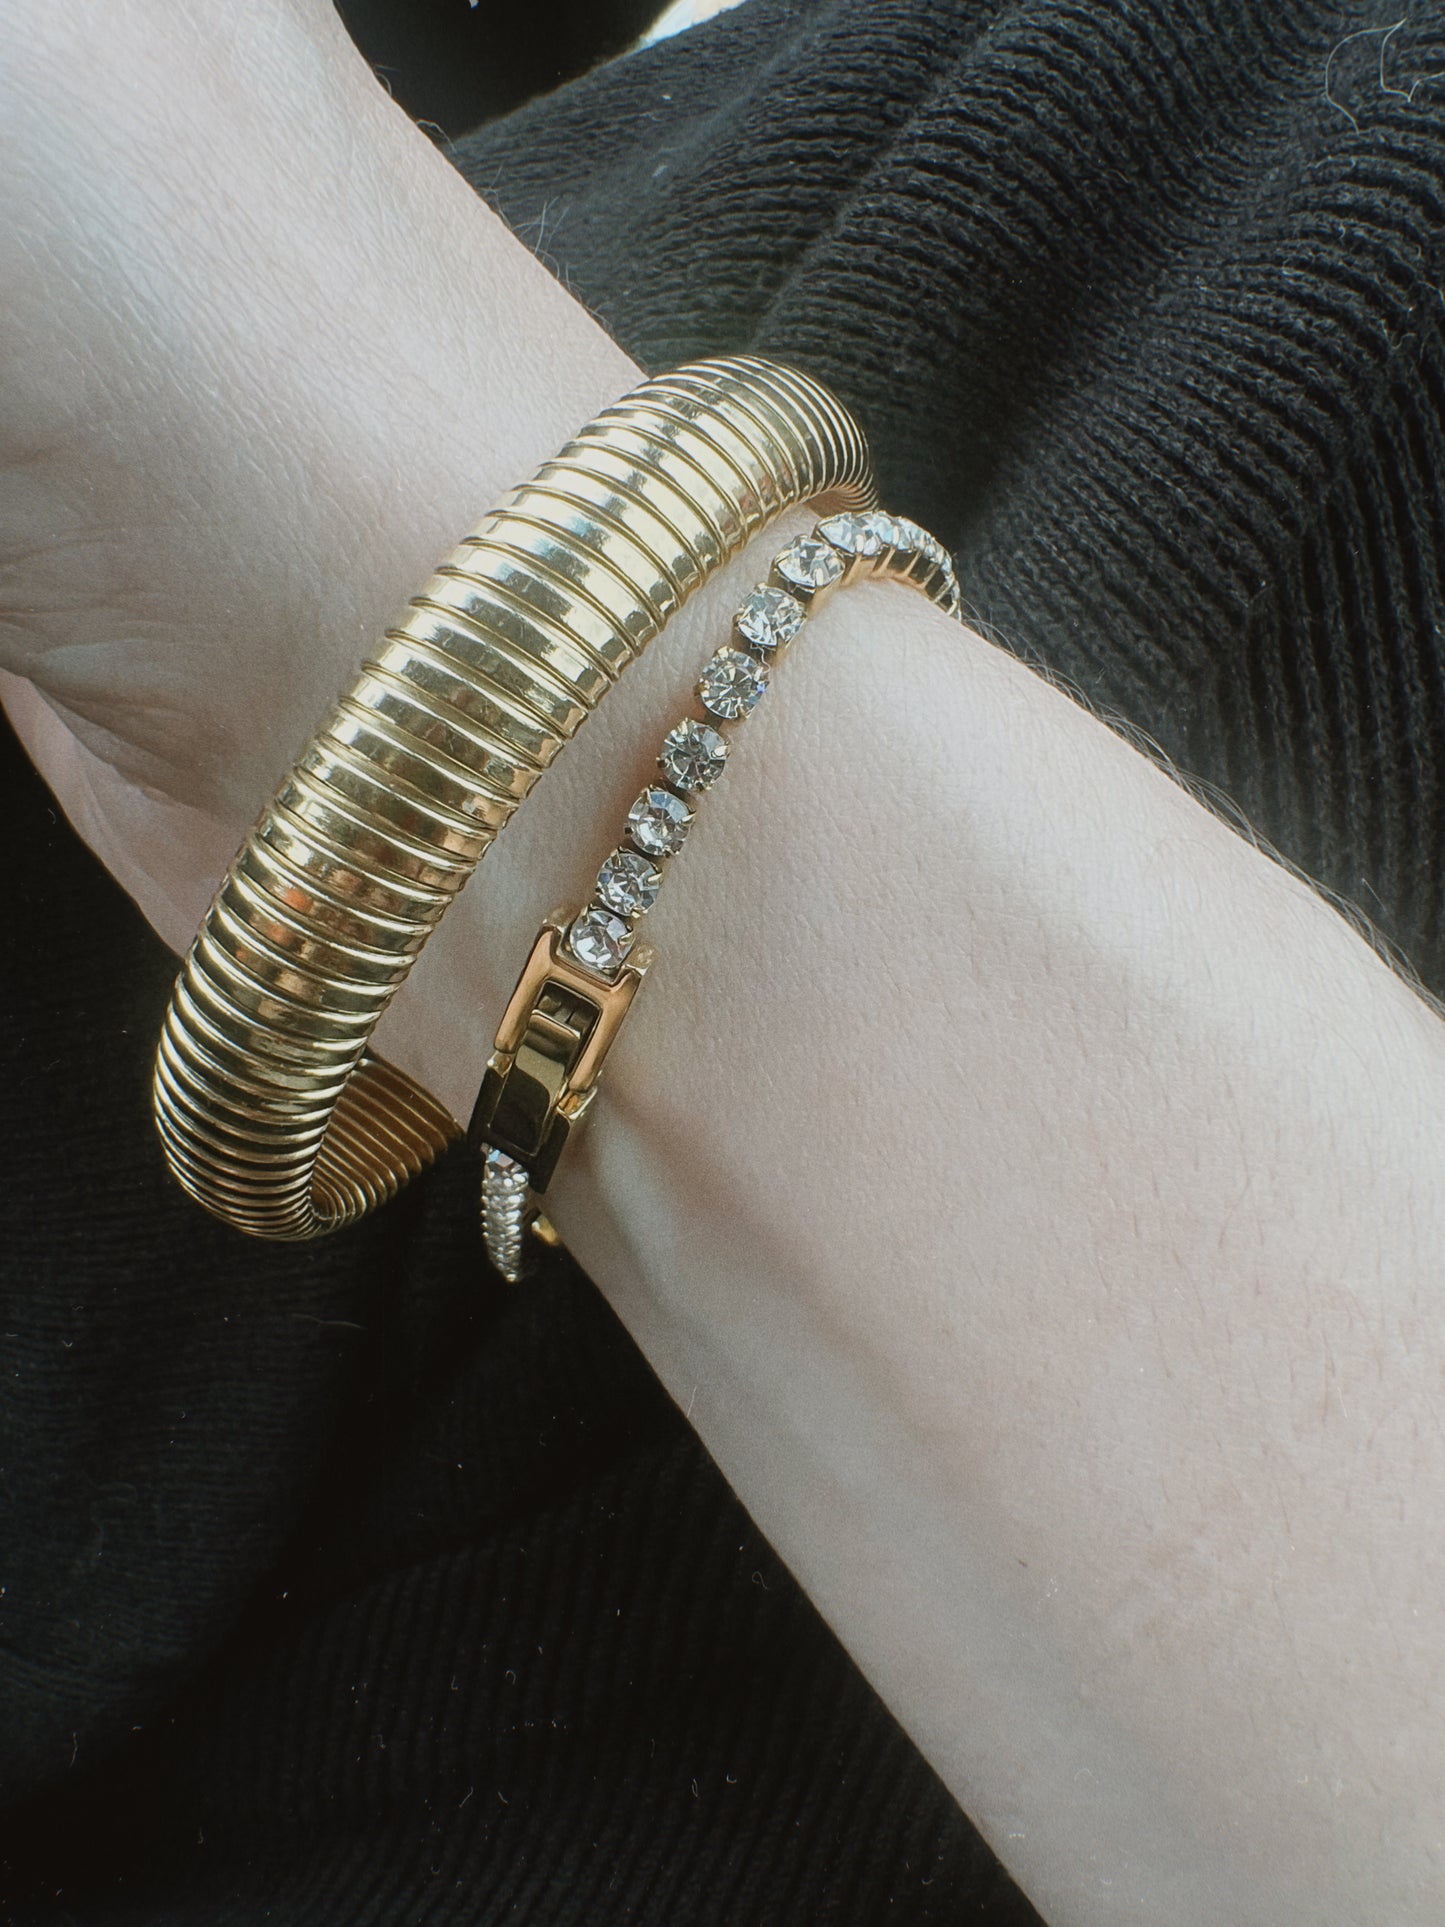 Adjustable tennis bracelet (gold and silver)